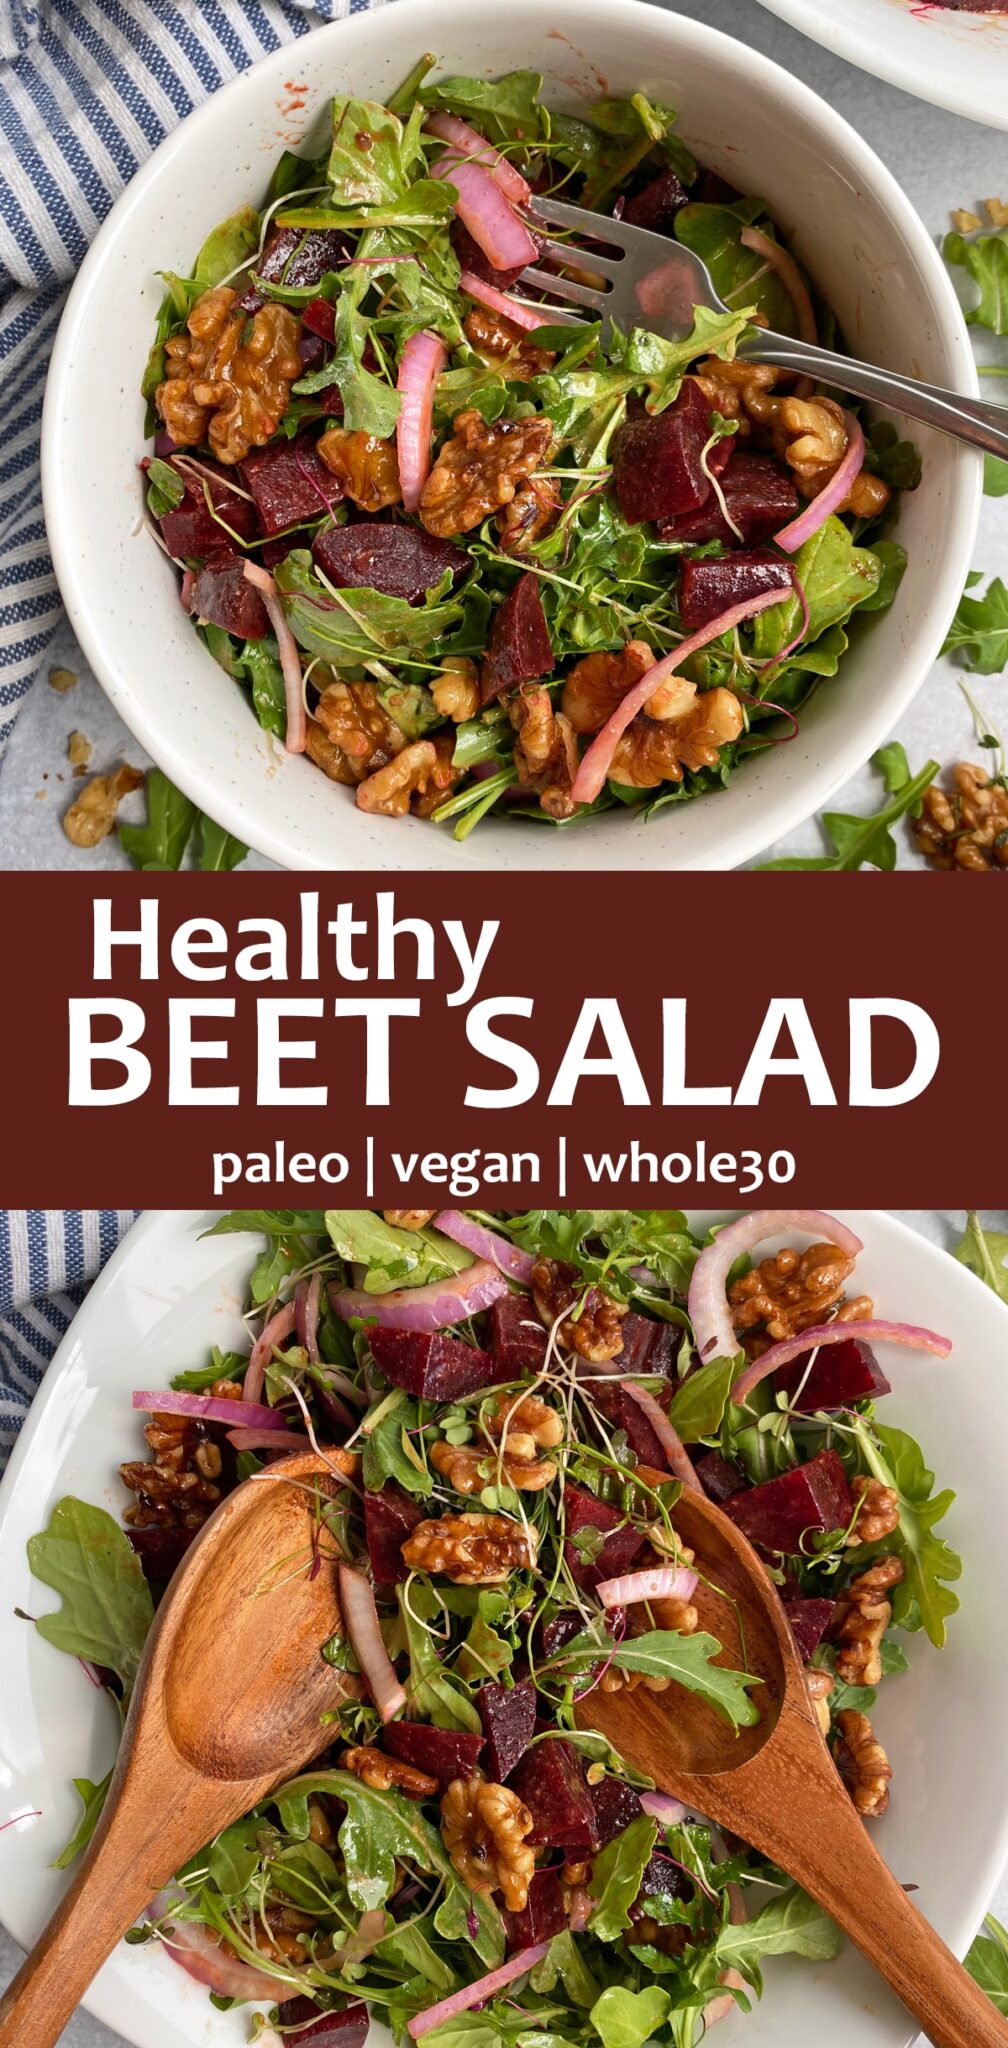 Beet Salad Recipe (Paleo, Vegan) - Bake It Paleo